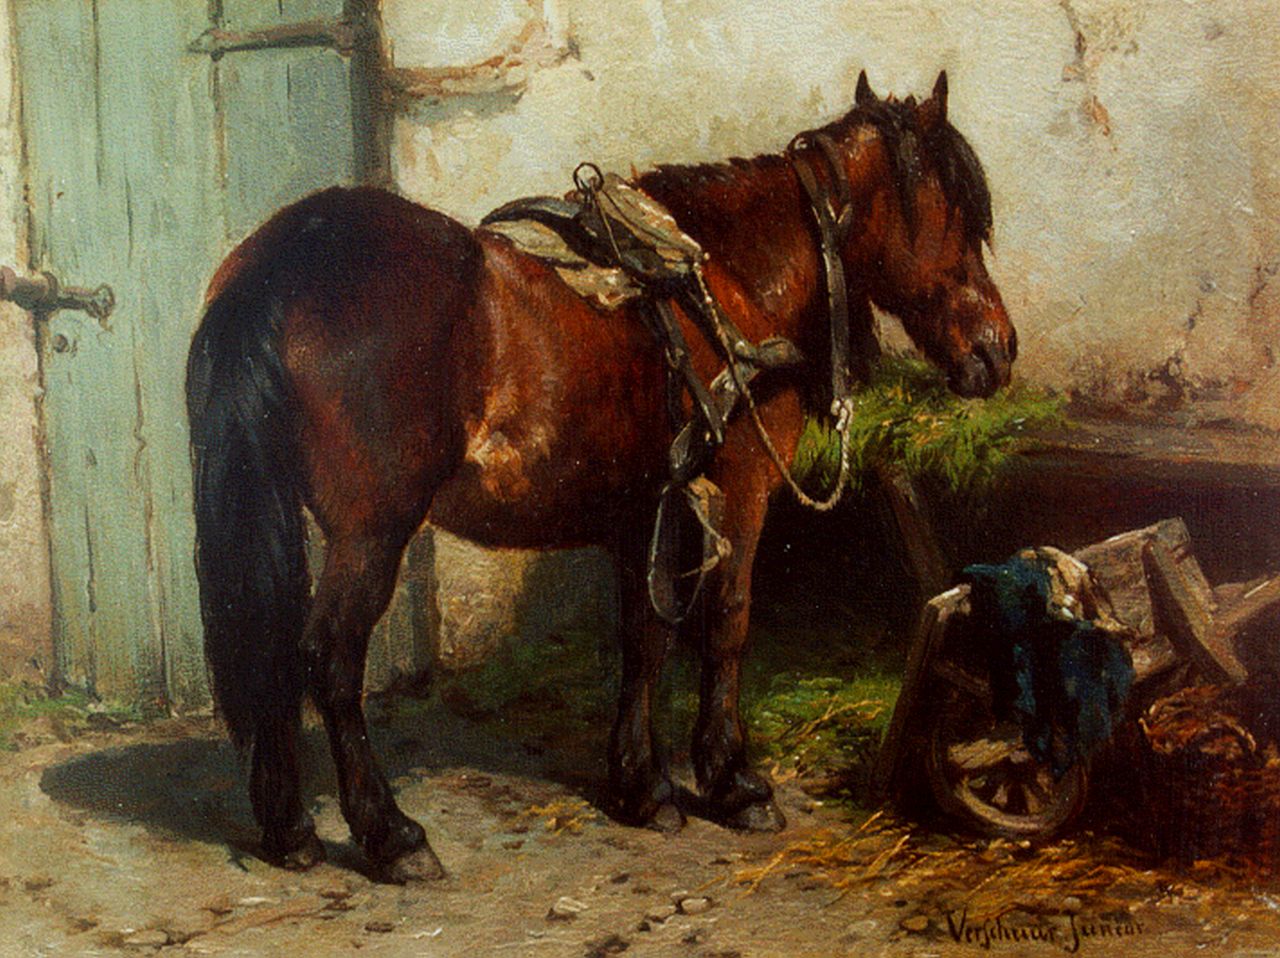 Verschuur jr. W.  | Wouter Verschuur jr., Een paard bij de stal, olieverf op paneel 15,2 x 20,3 cm, gesigneerd rechtsonder